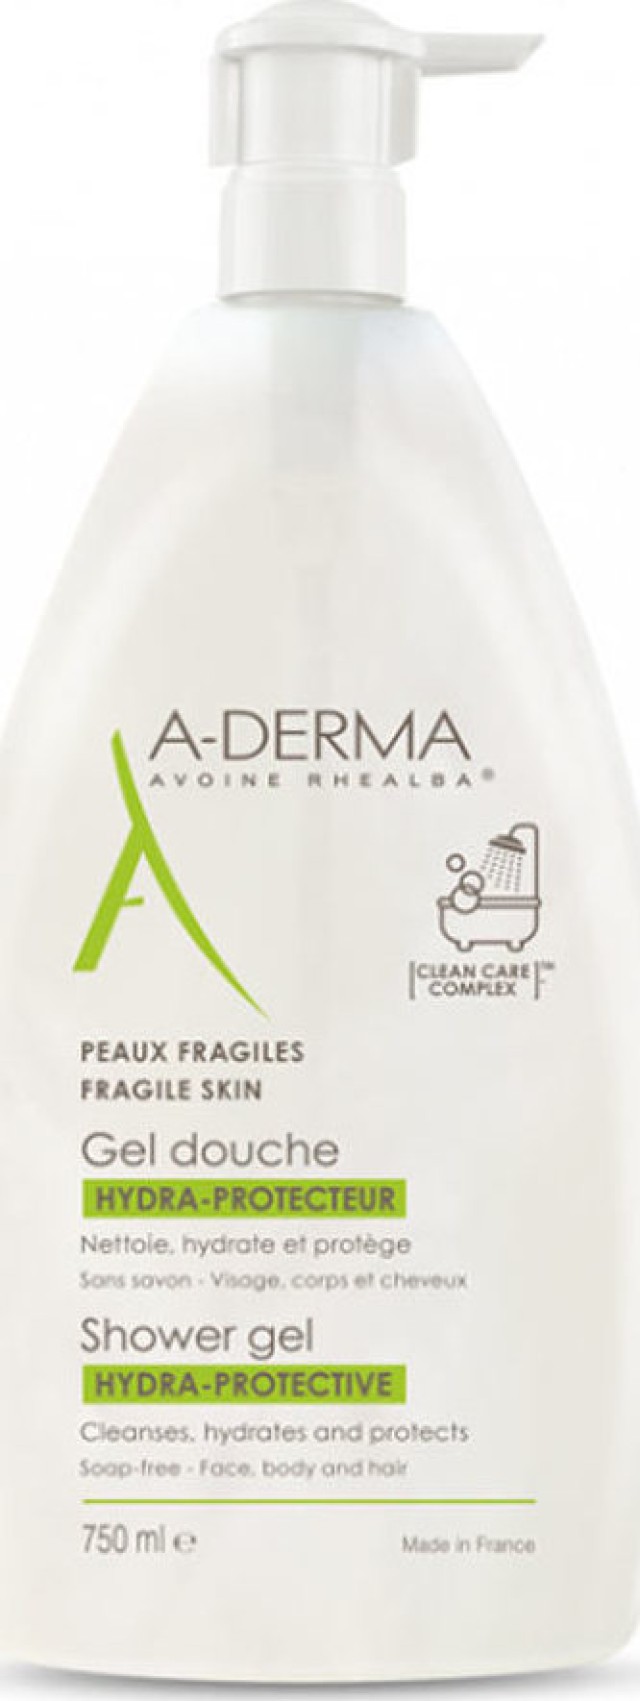 A-Derma Hydra - Protective Shower Gel Αφρόλουτρο για Ευαίσθητες Επιδερμίδες 750ml